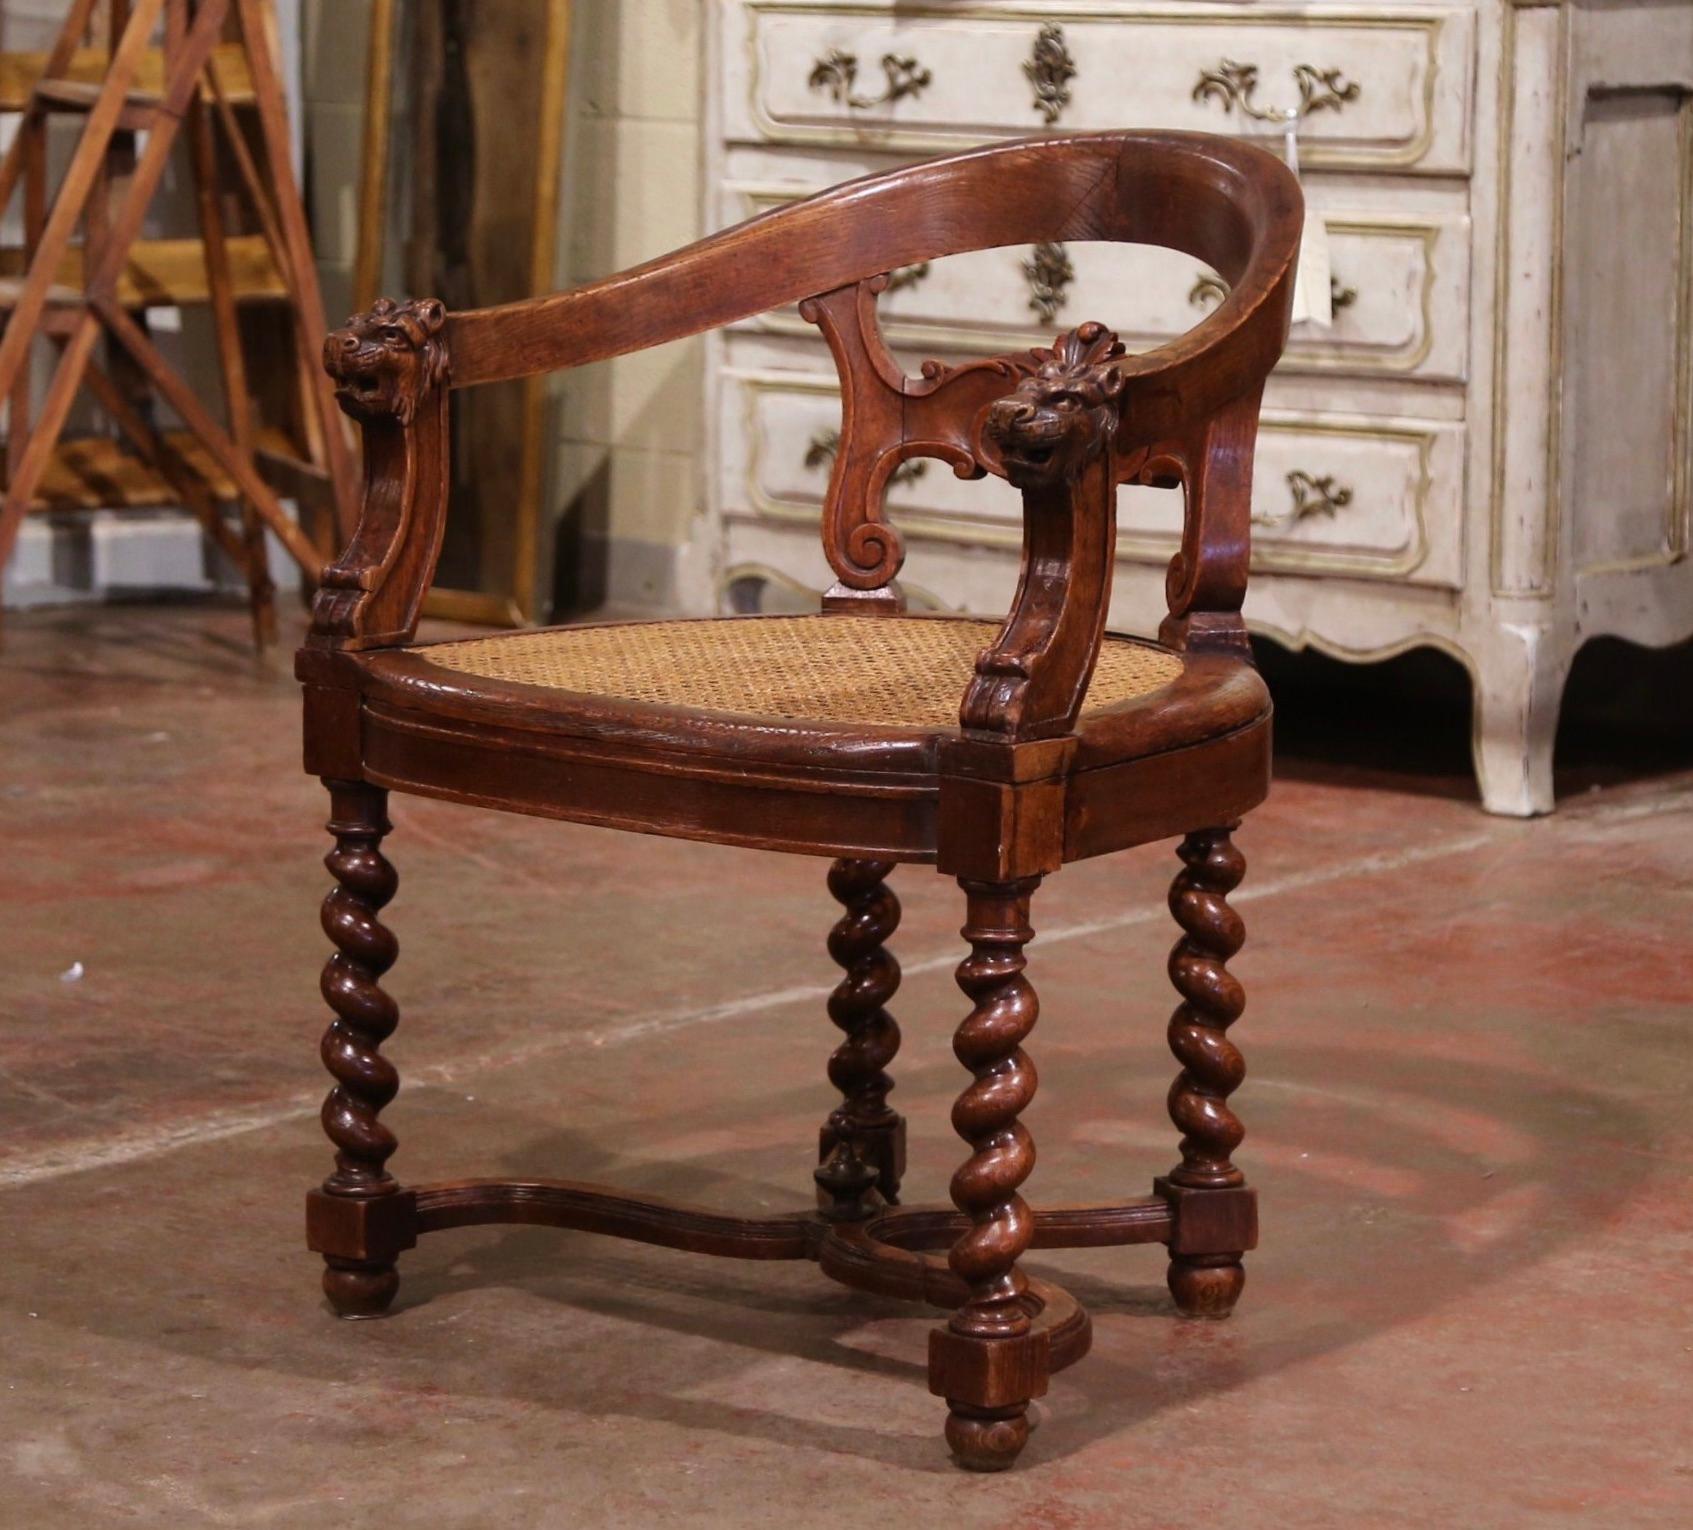 Cet élégant fauteuil ancien a été fabriqué en France, vers 1880. Construit en bois de chêne, le fauteuil repose sur des pieds en torsion d'orge agrémentés d'un châssis inférieur en X à volutes et d'un épi de faîtage décoratif. La chaise présente un